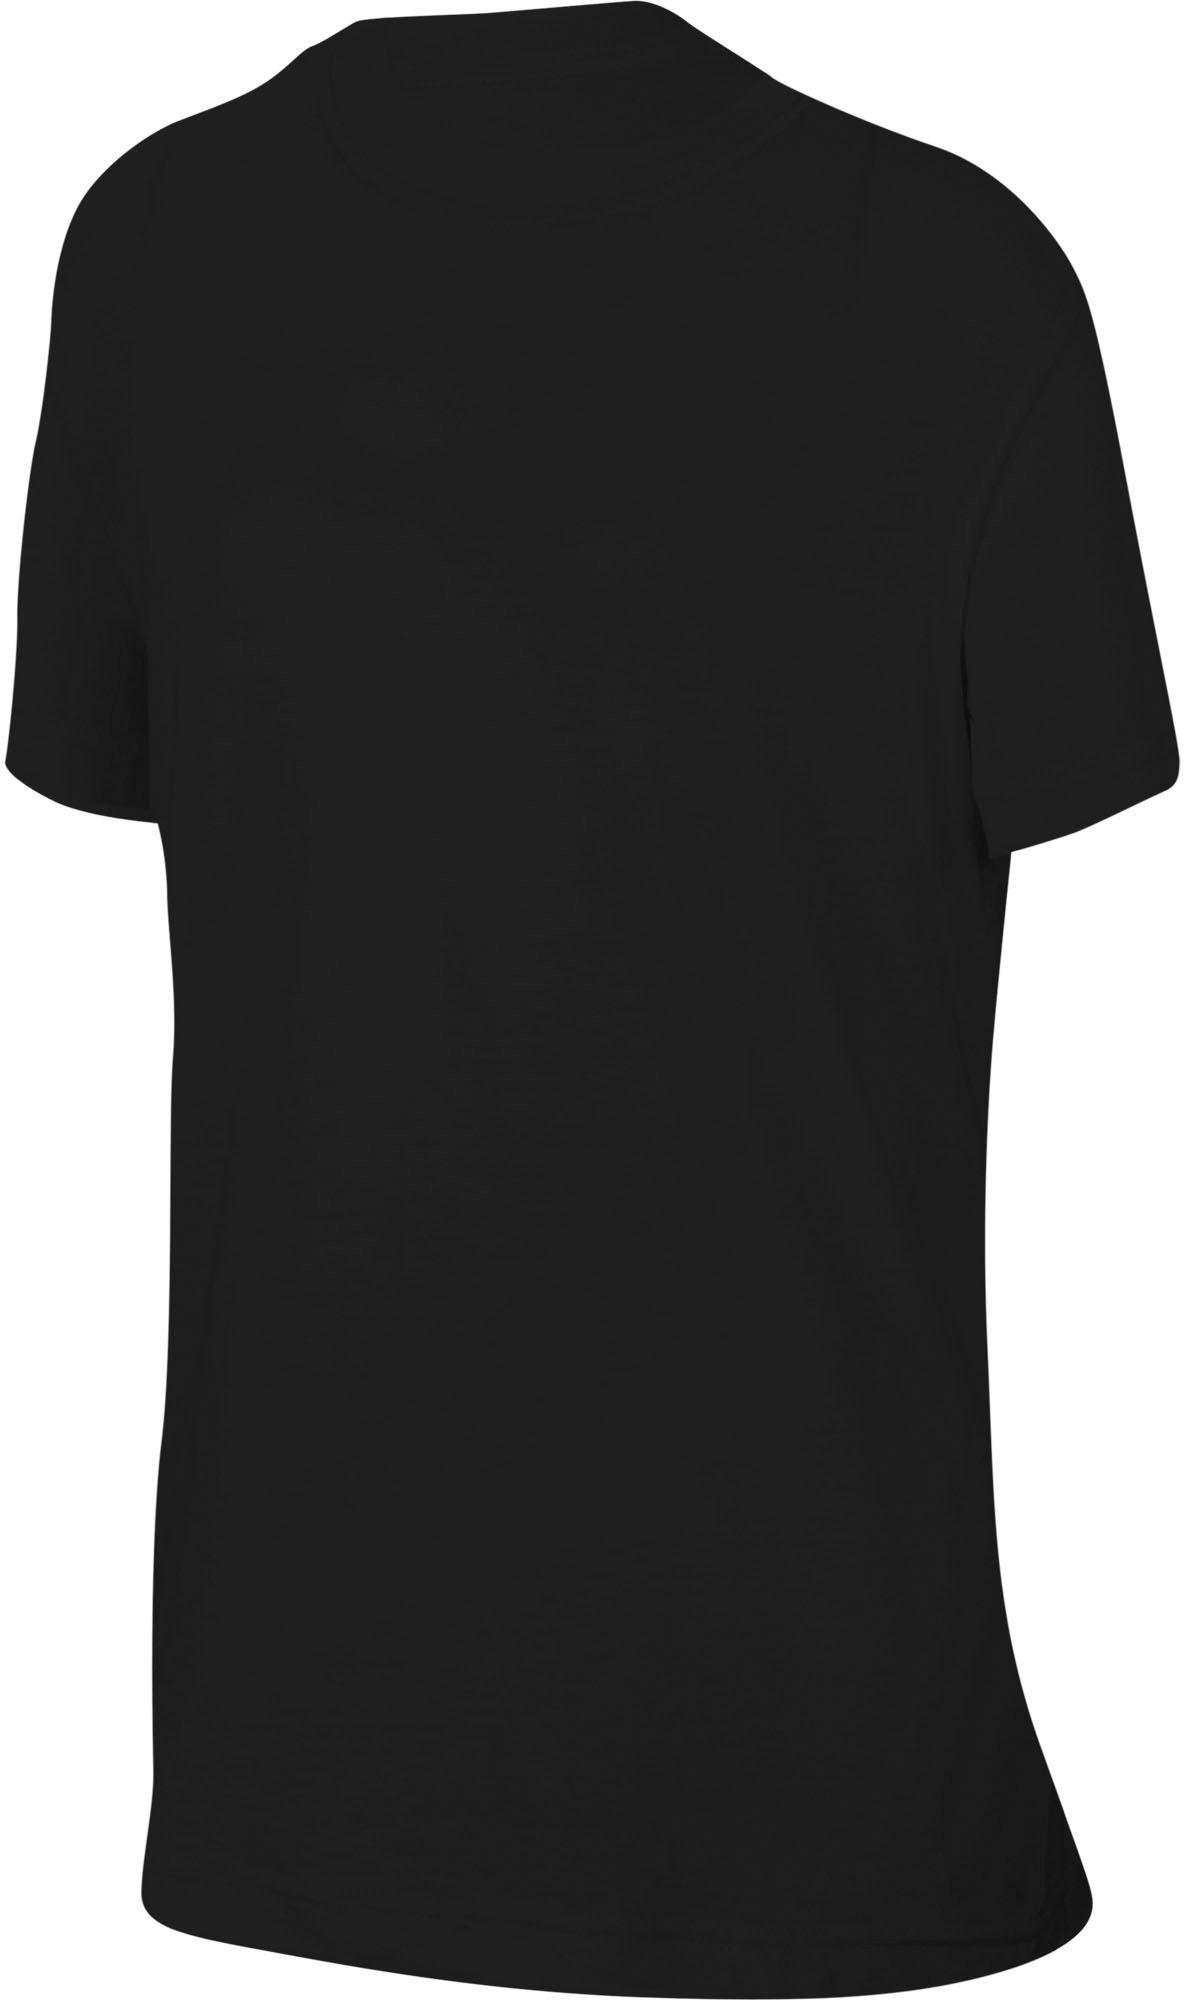 Nike Kids' T-Shirt Big (Girls) schwarz Sportswear T-Shirt